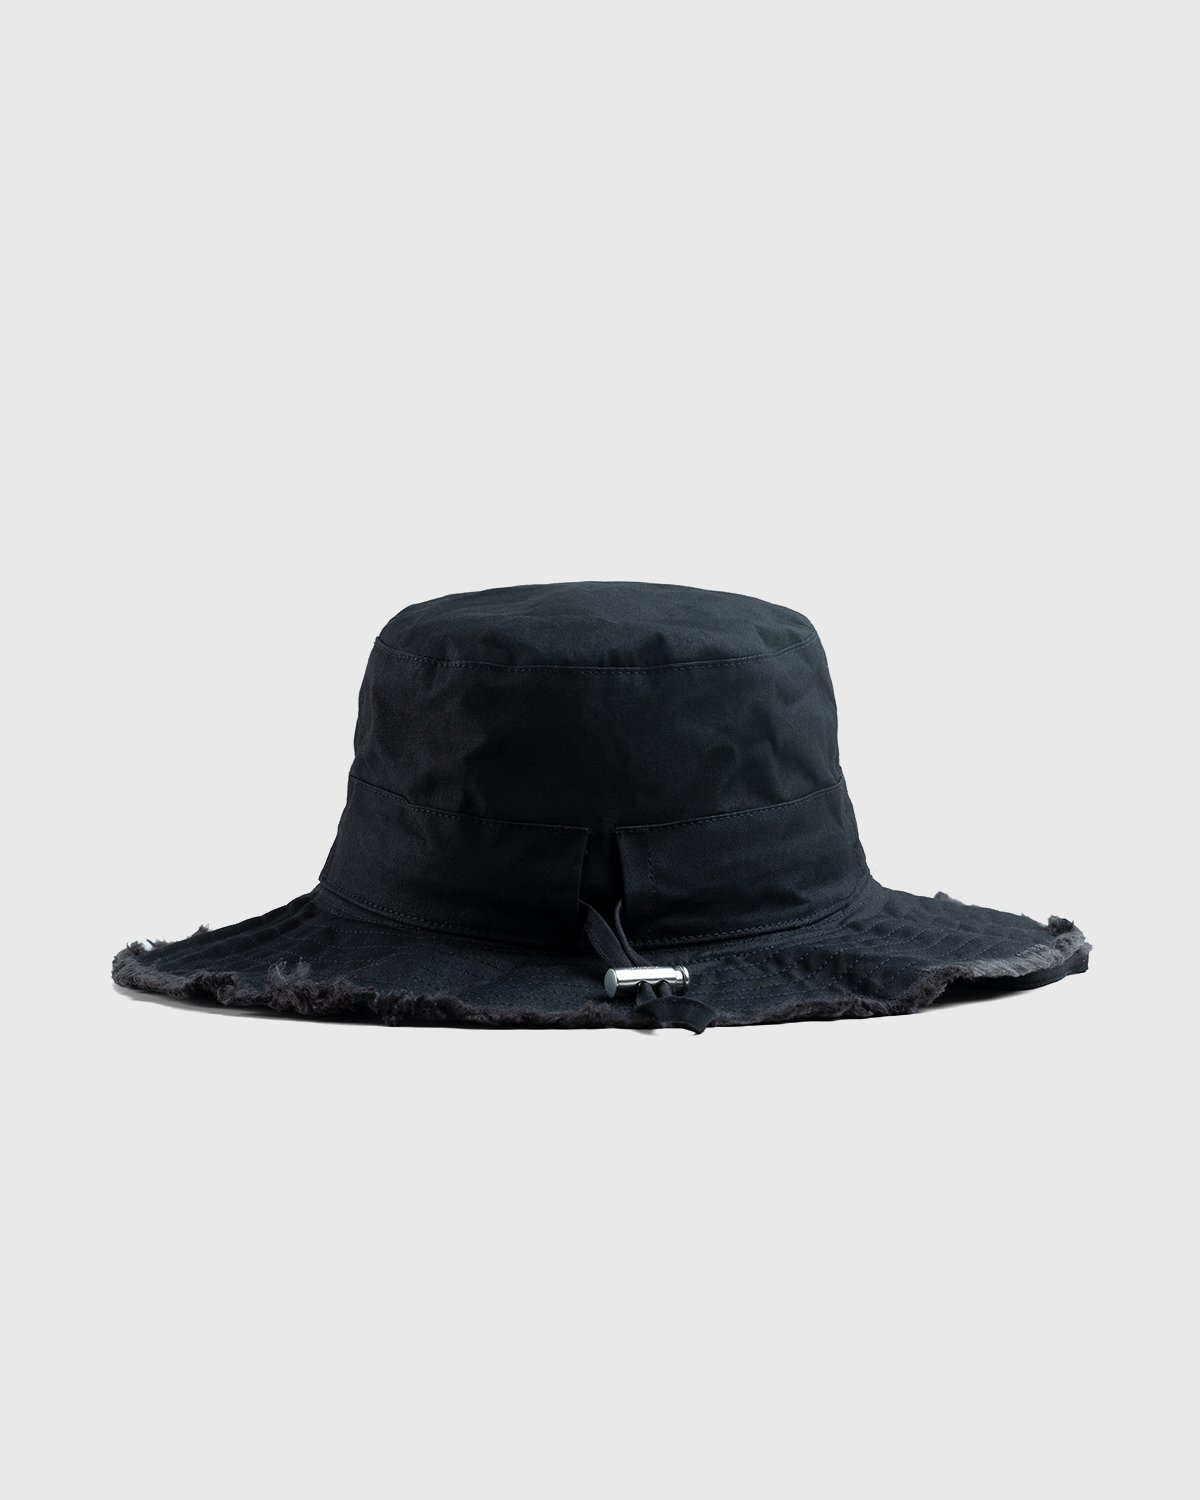 JACQUEMUS – Le Bob Artichaut Black - Bucket Hats - Black - Image 2